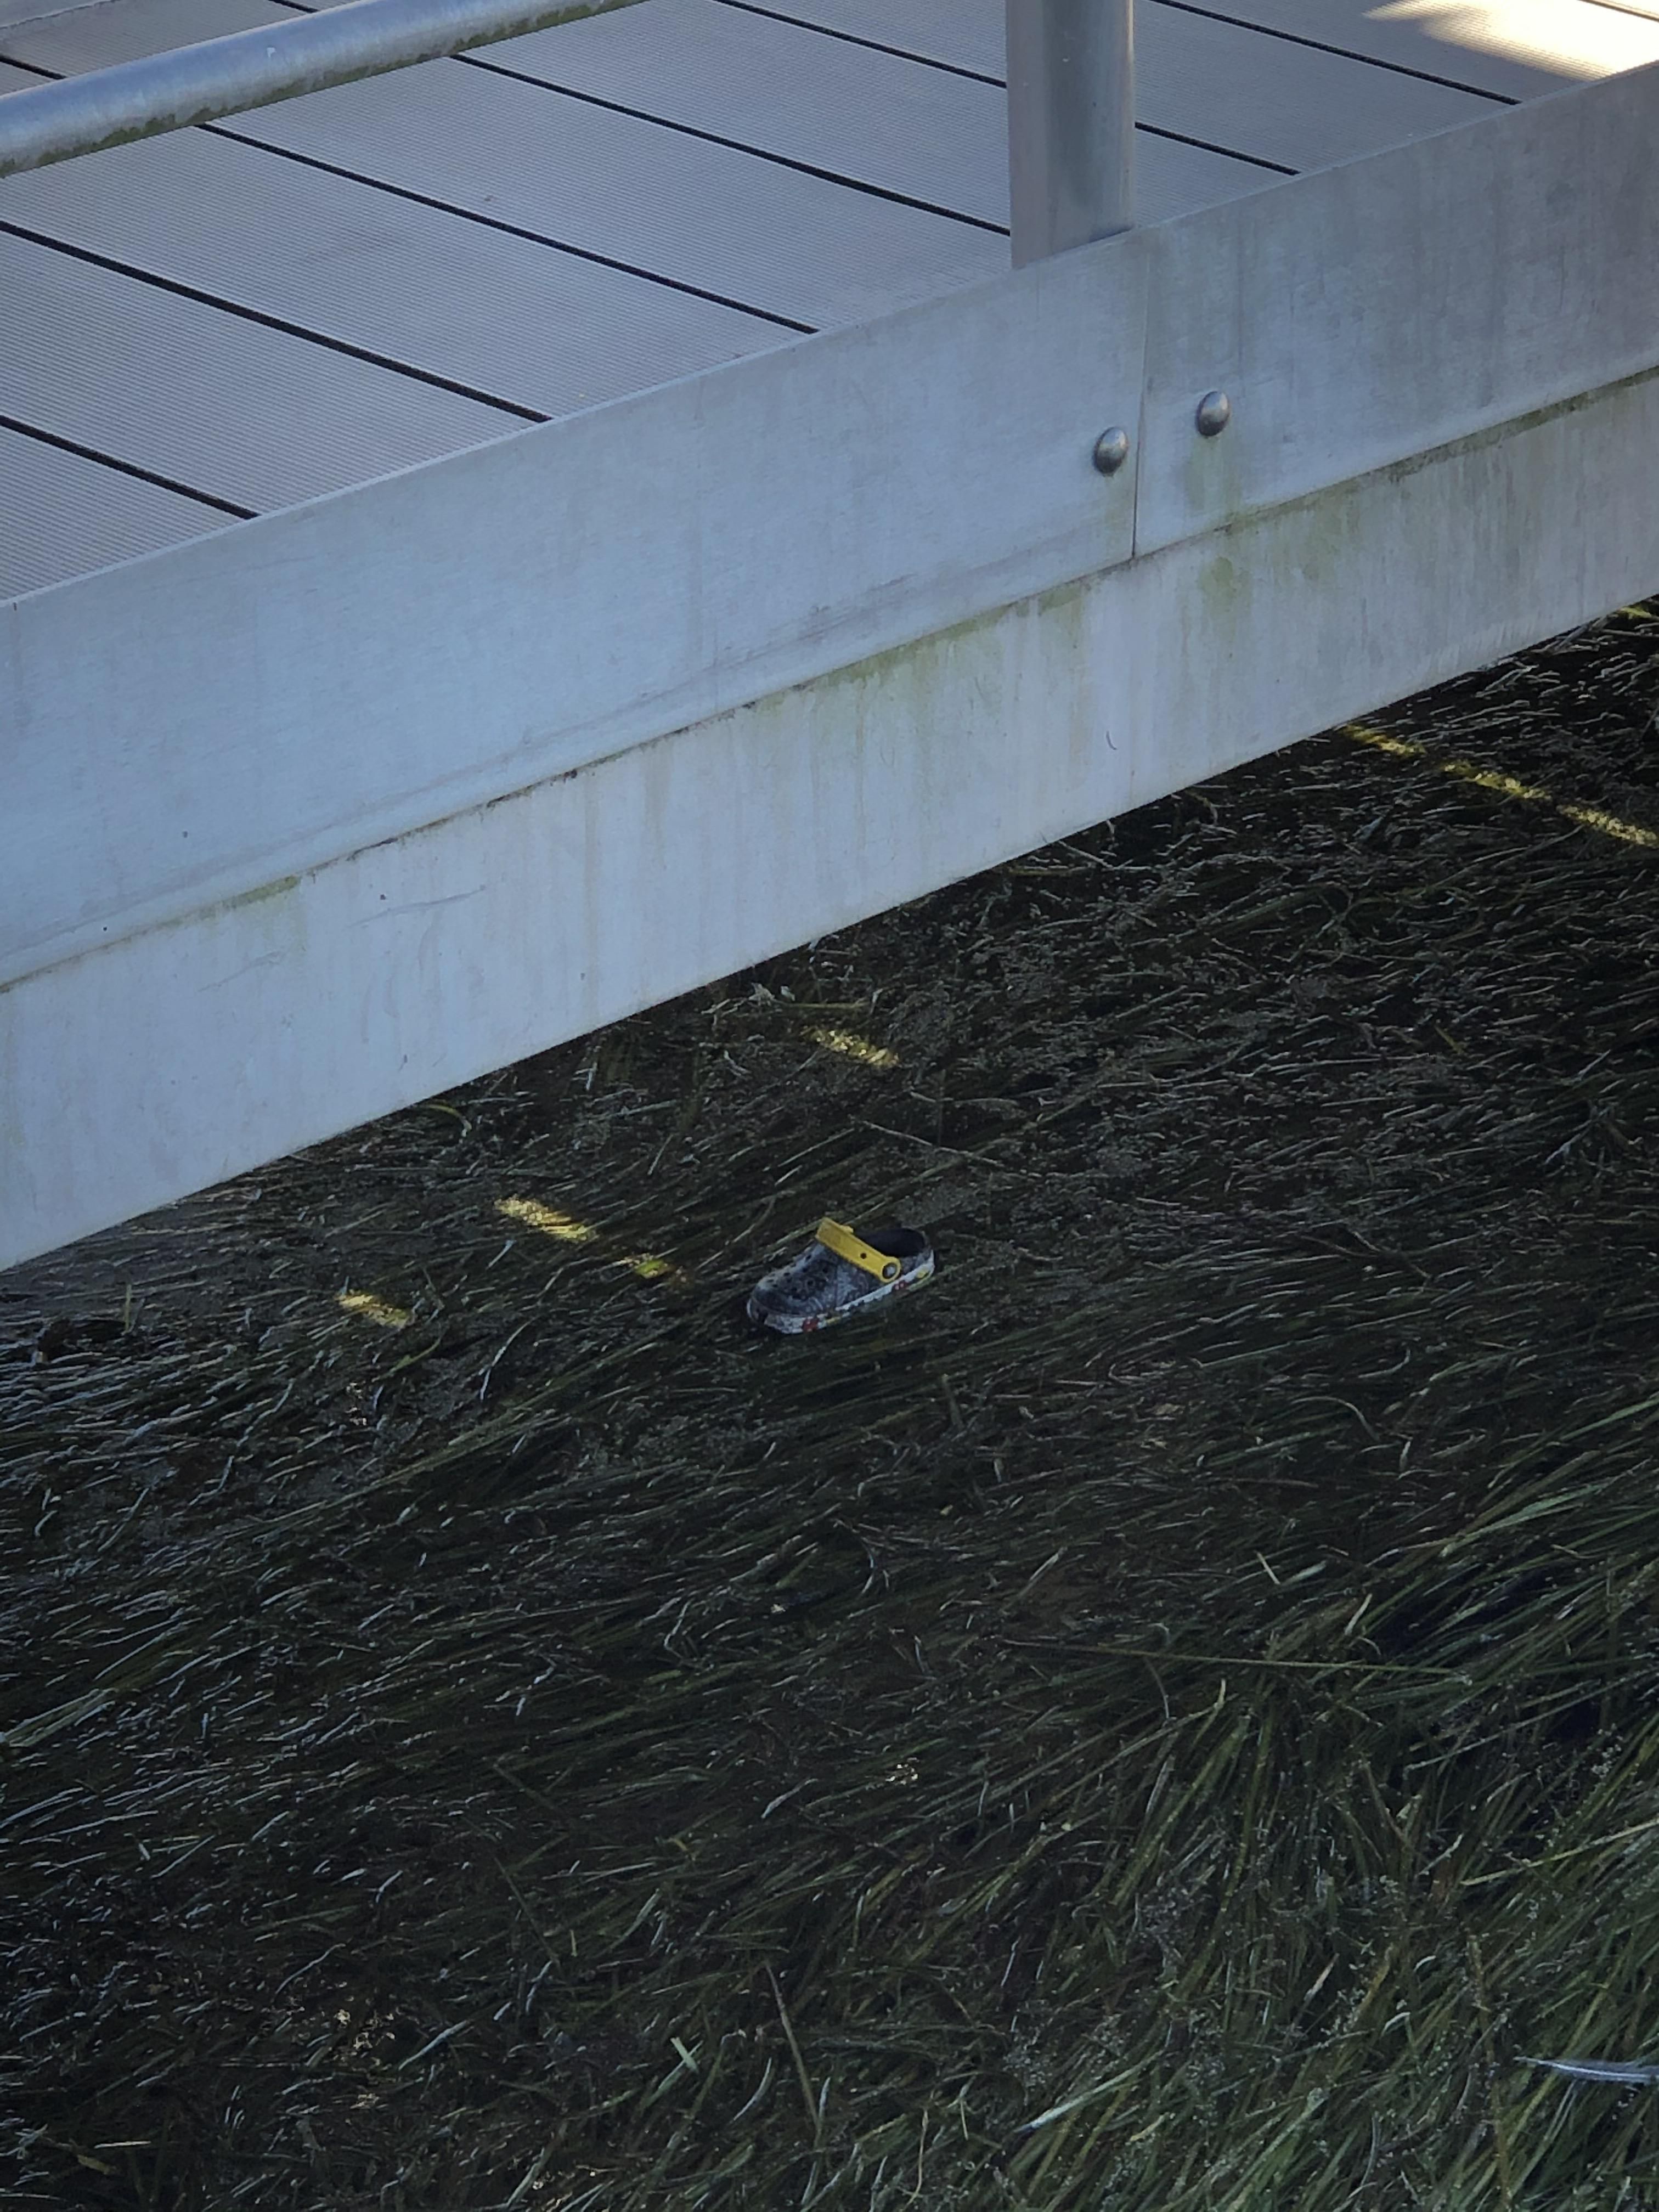 Be careful folks, found a croc lurking under a bridge on the boardwalk at Disney World.